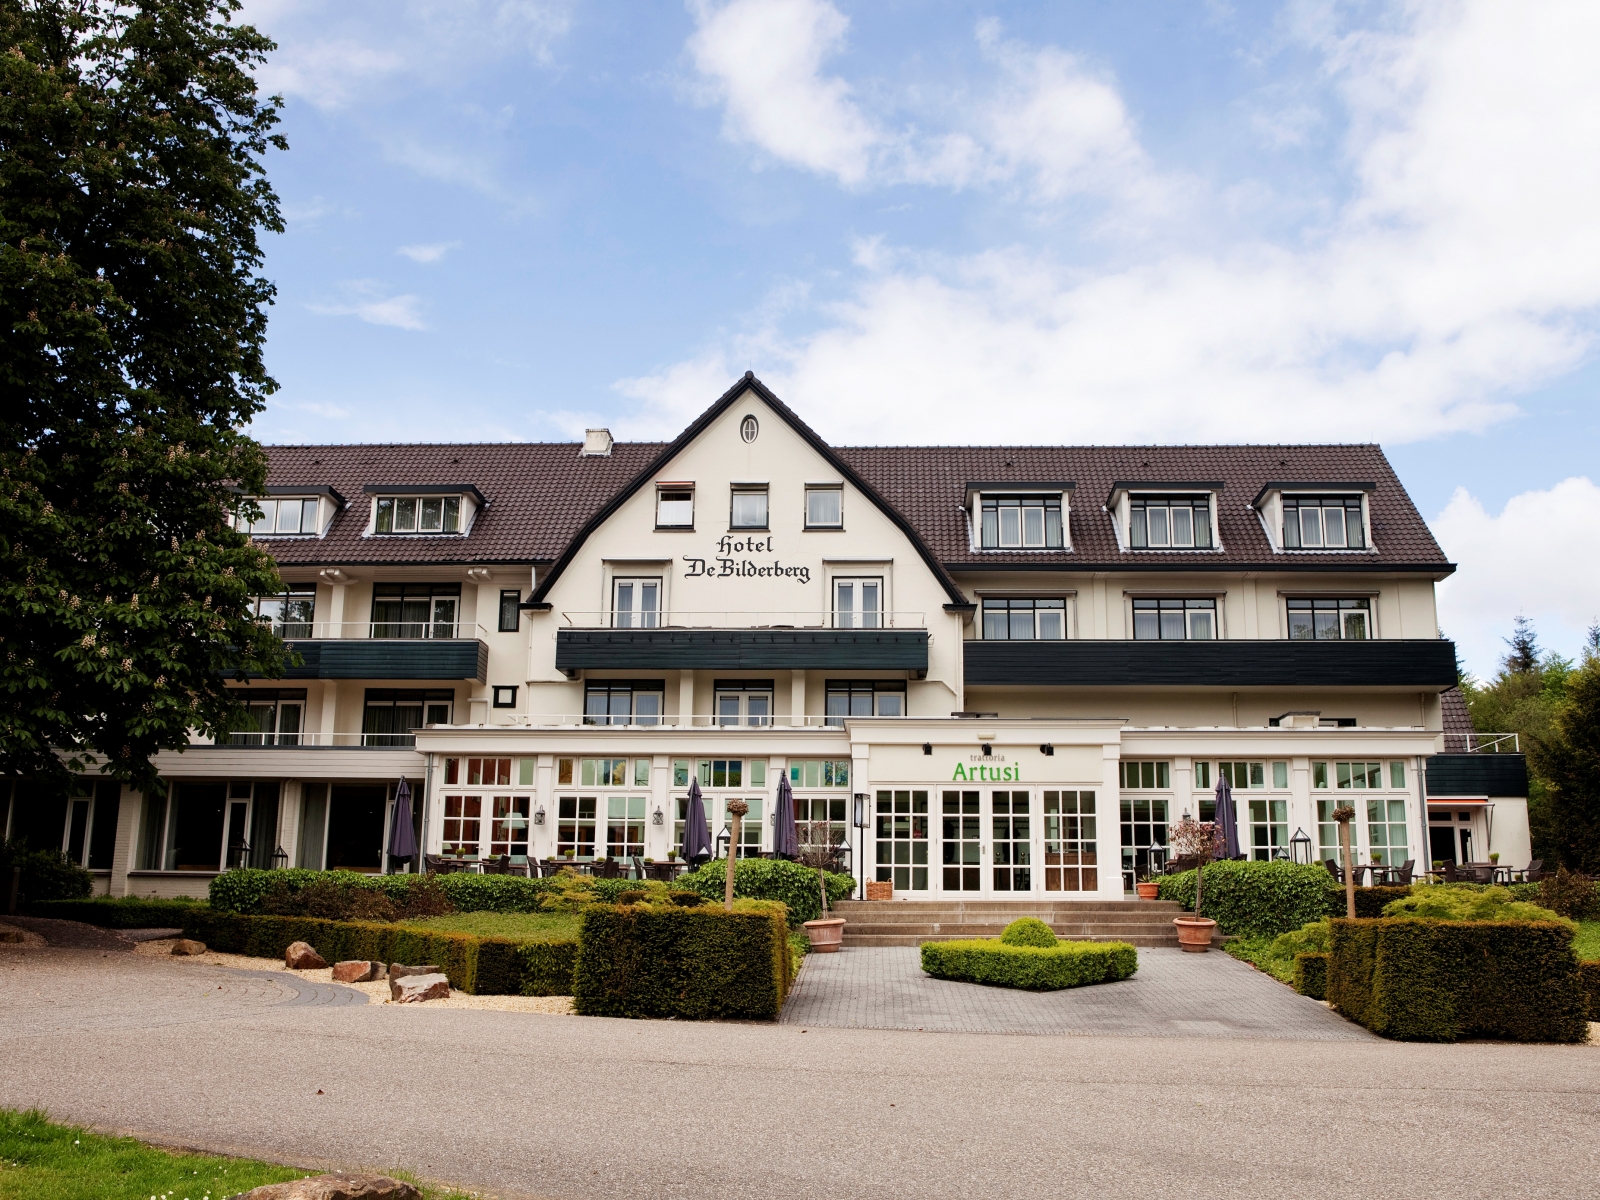 Hotel De Bilderberg <br/>87.00 ew <br/> <a href='http://vakantieoplossing.nl/outpage/?id=eccf66789ca574e75879b2988d309b0b' target='_blank'>View Details</a>